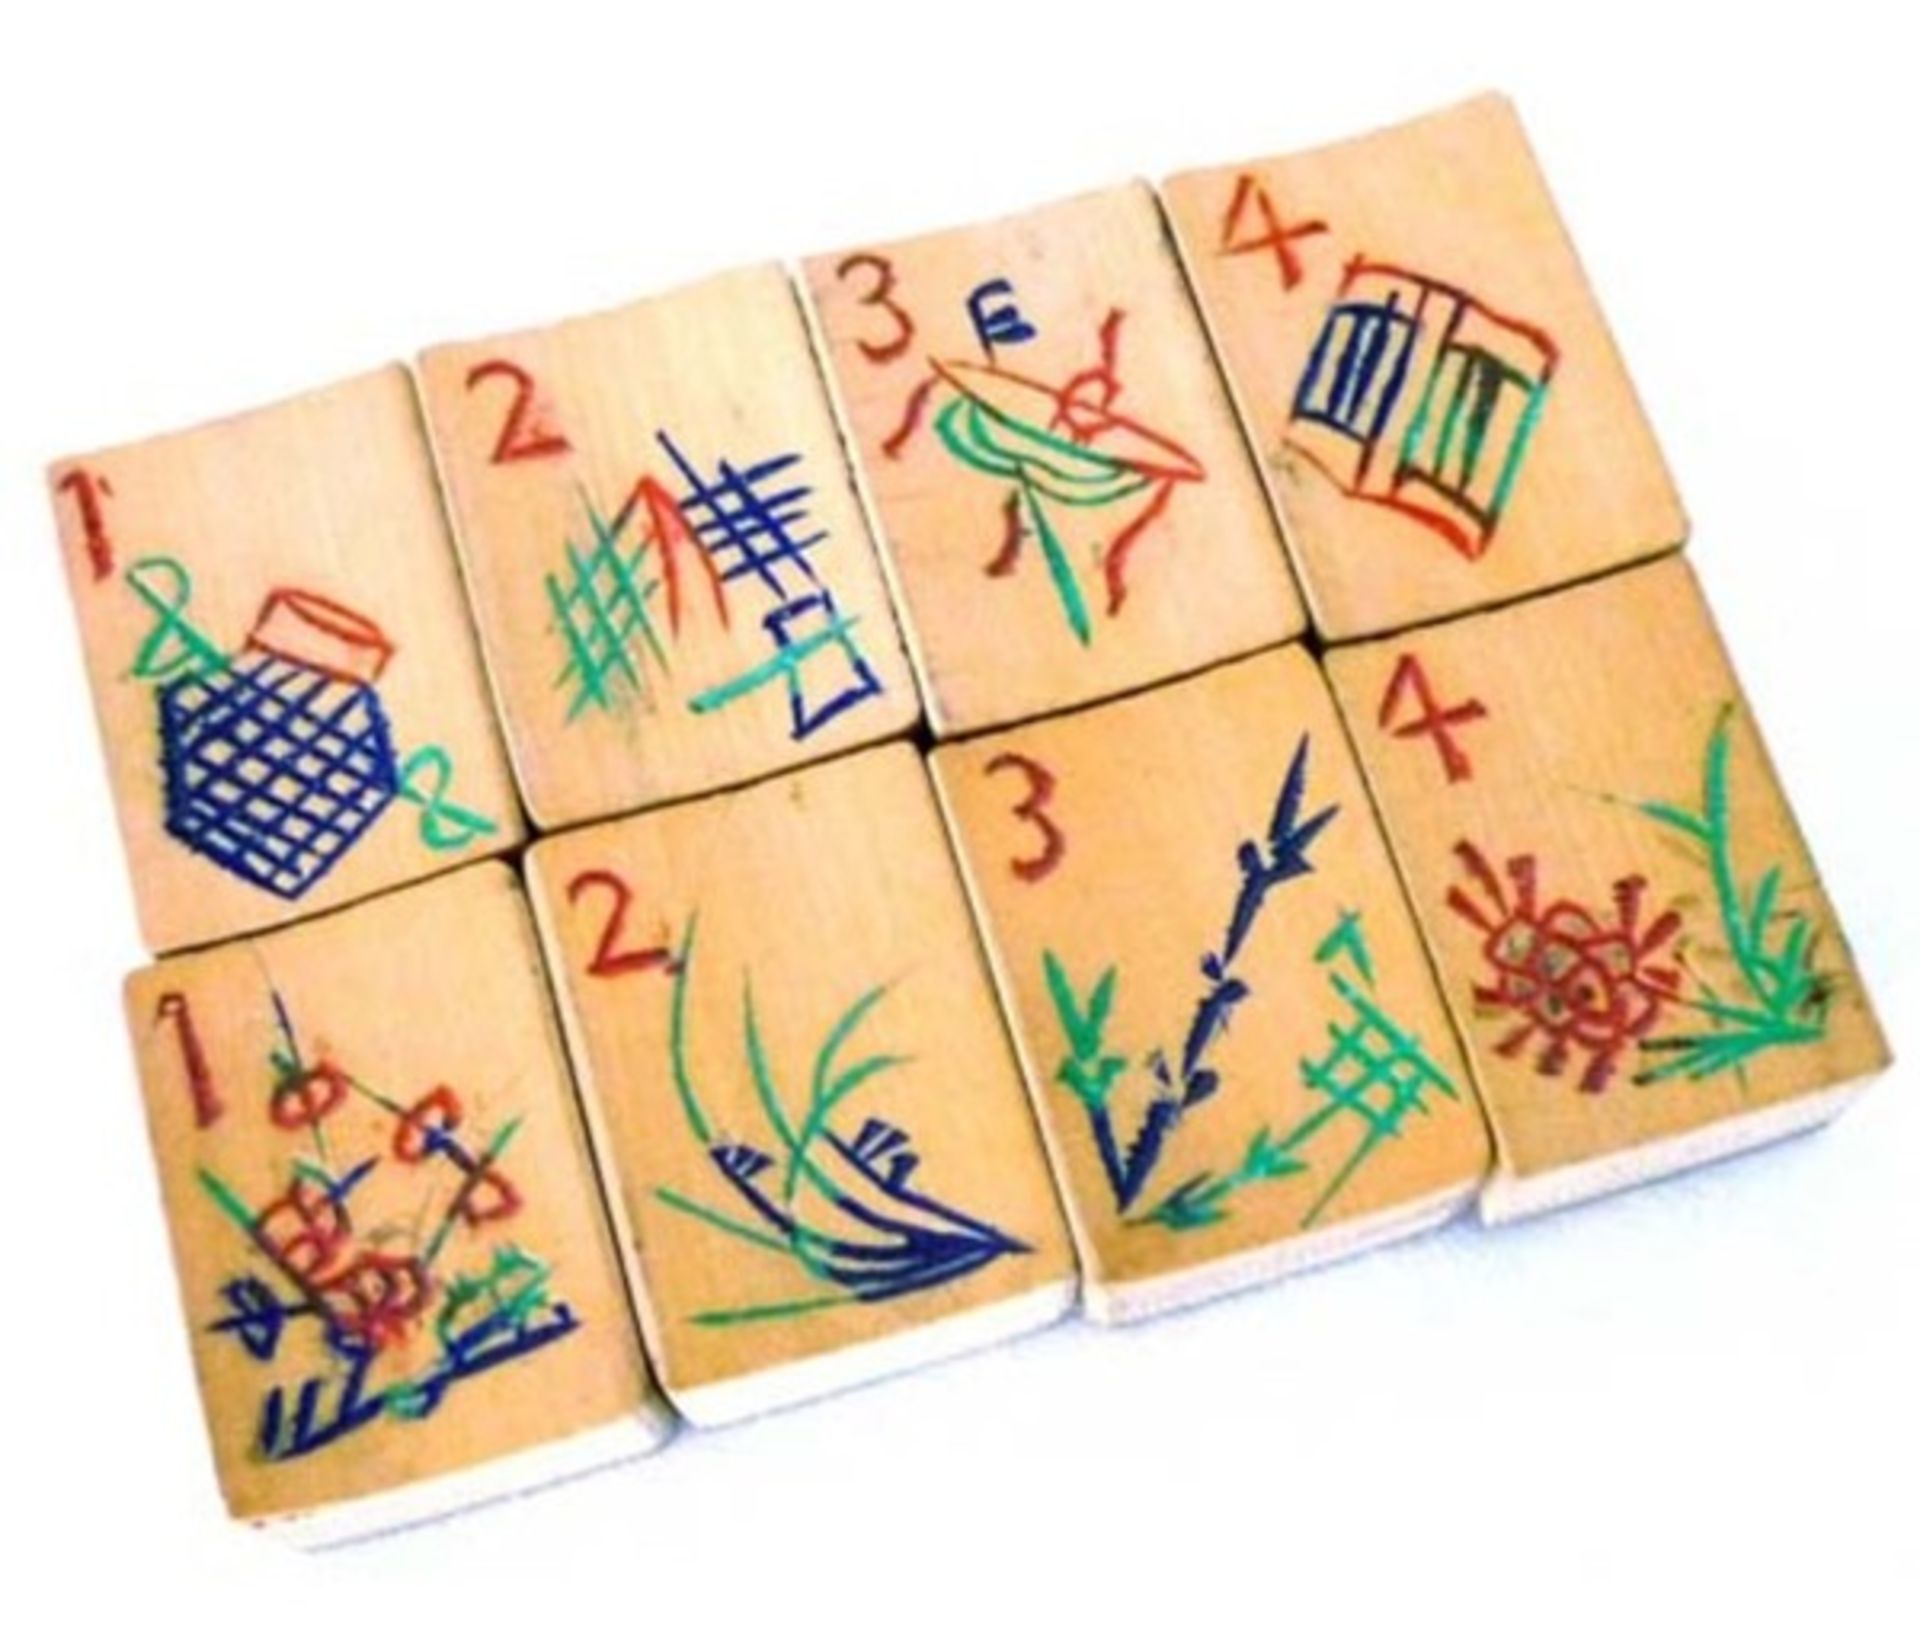 (Mahjong) Mahjong bamboe, veelkleurige Chinese doos, ca. 1924 - Bild 5 aus 7